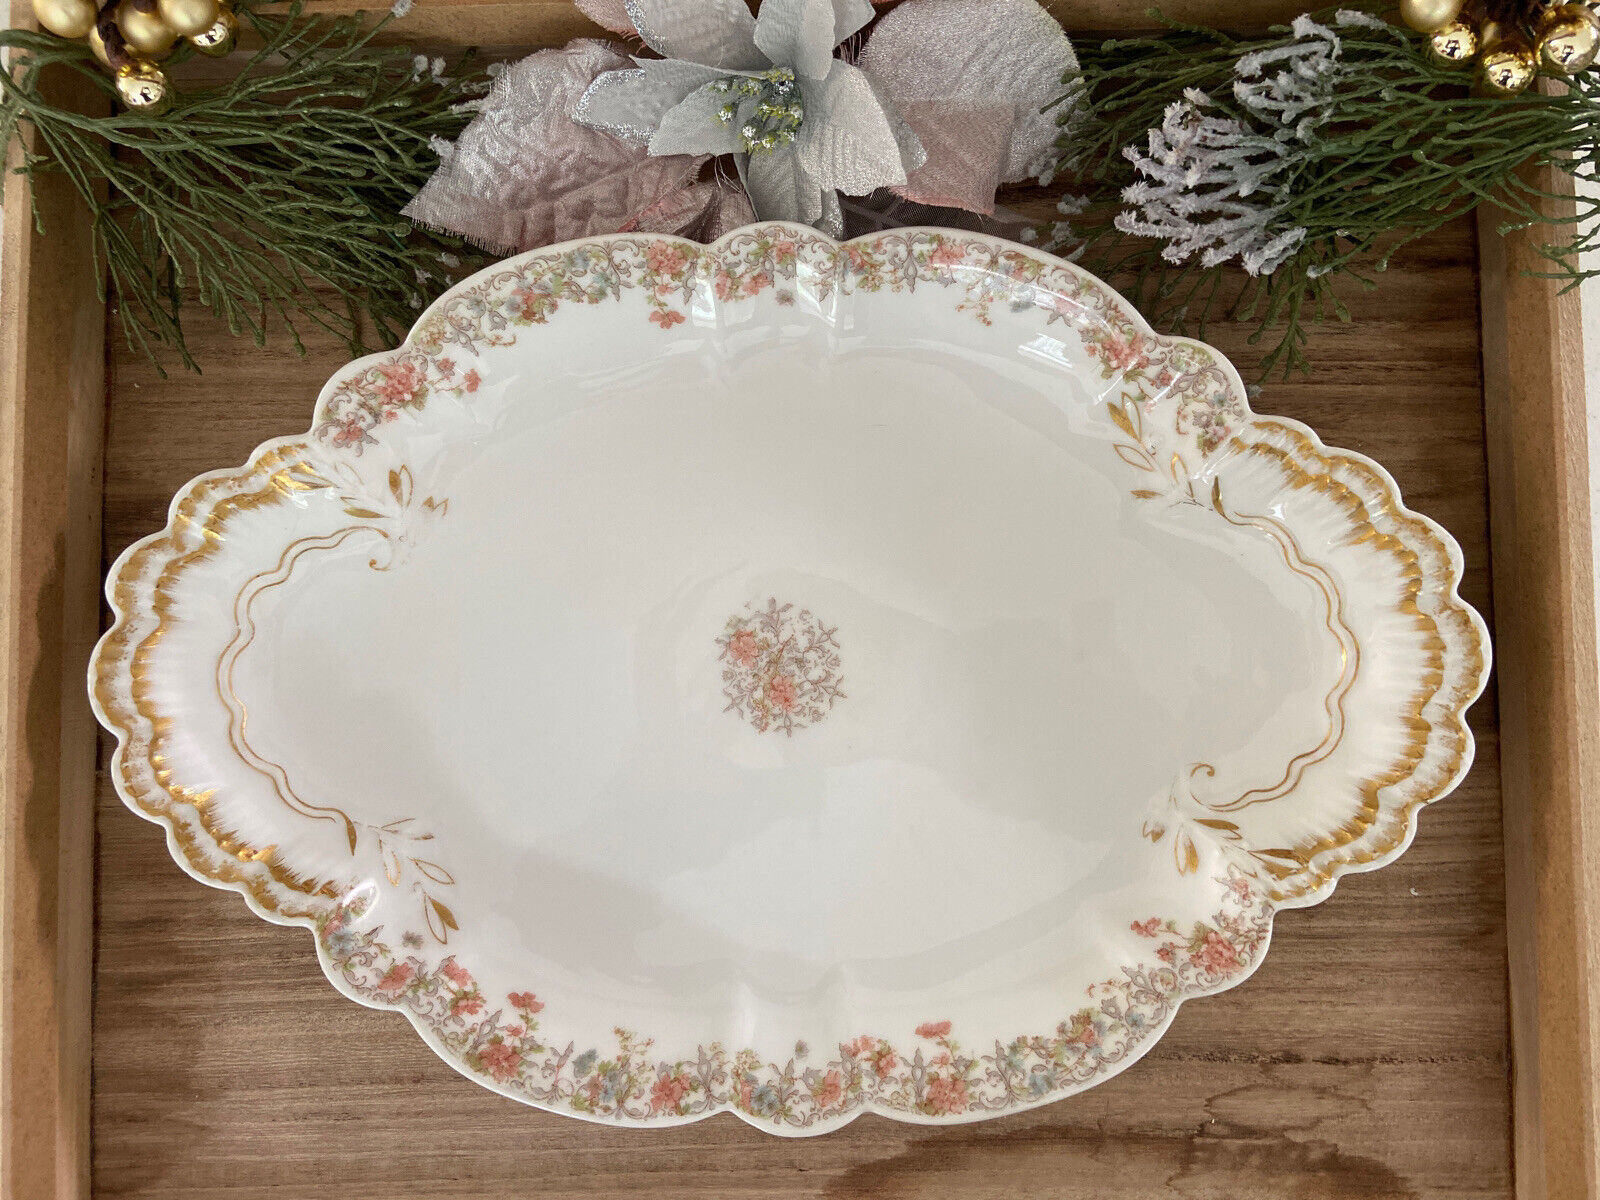 Haviland Limoges Floral Platter Serving Tray Dish France Antique 15”x10.25”